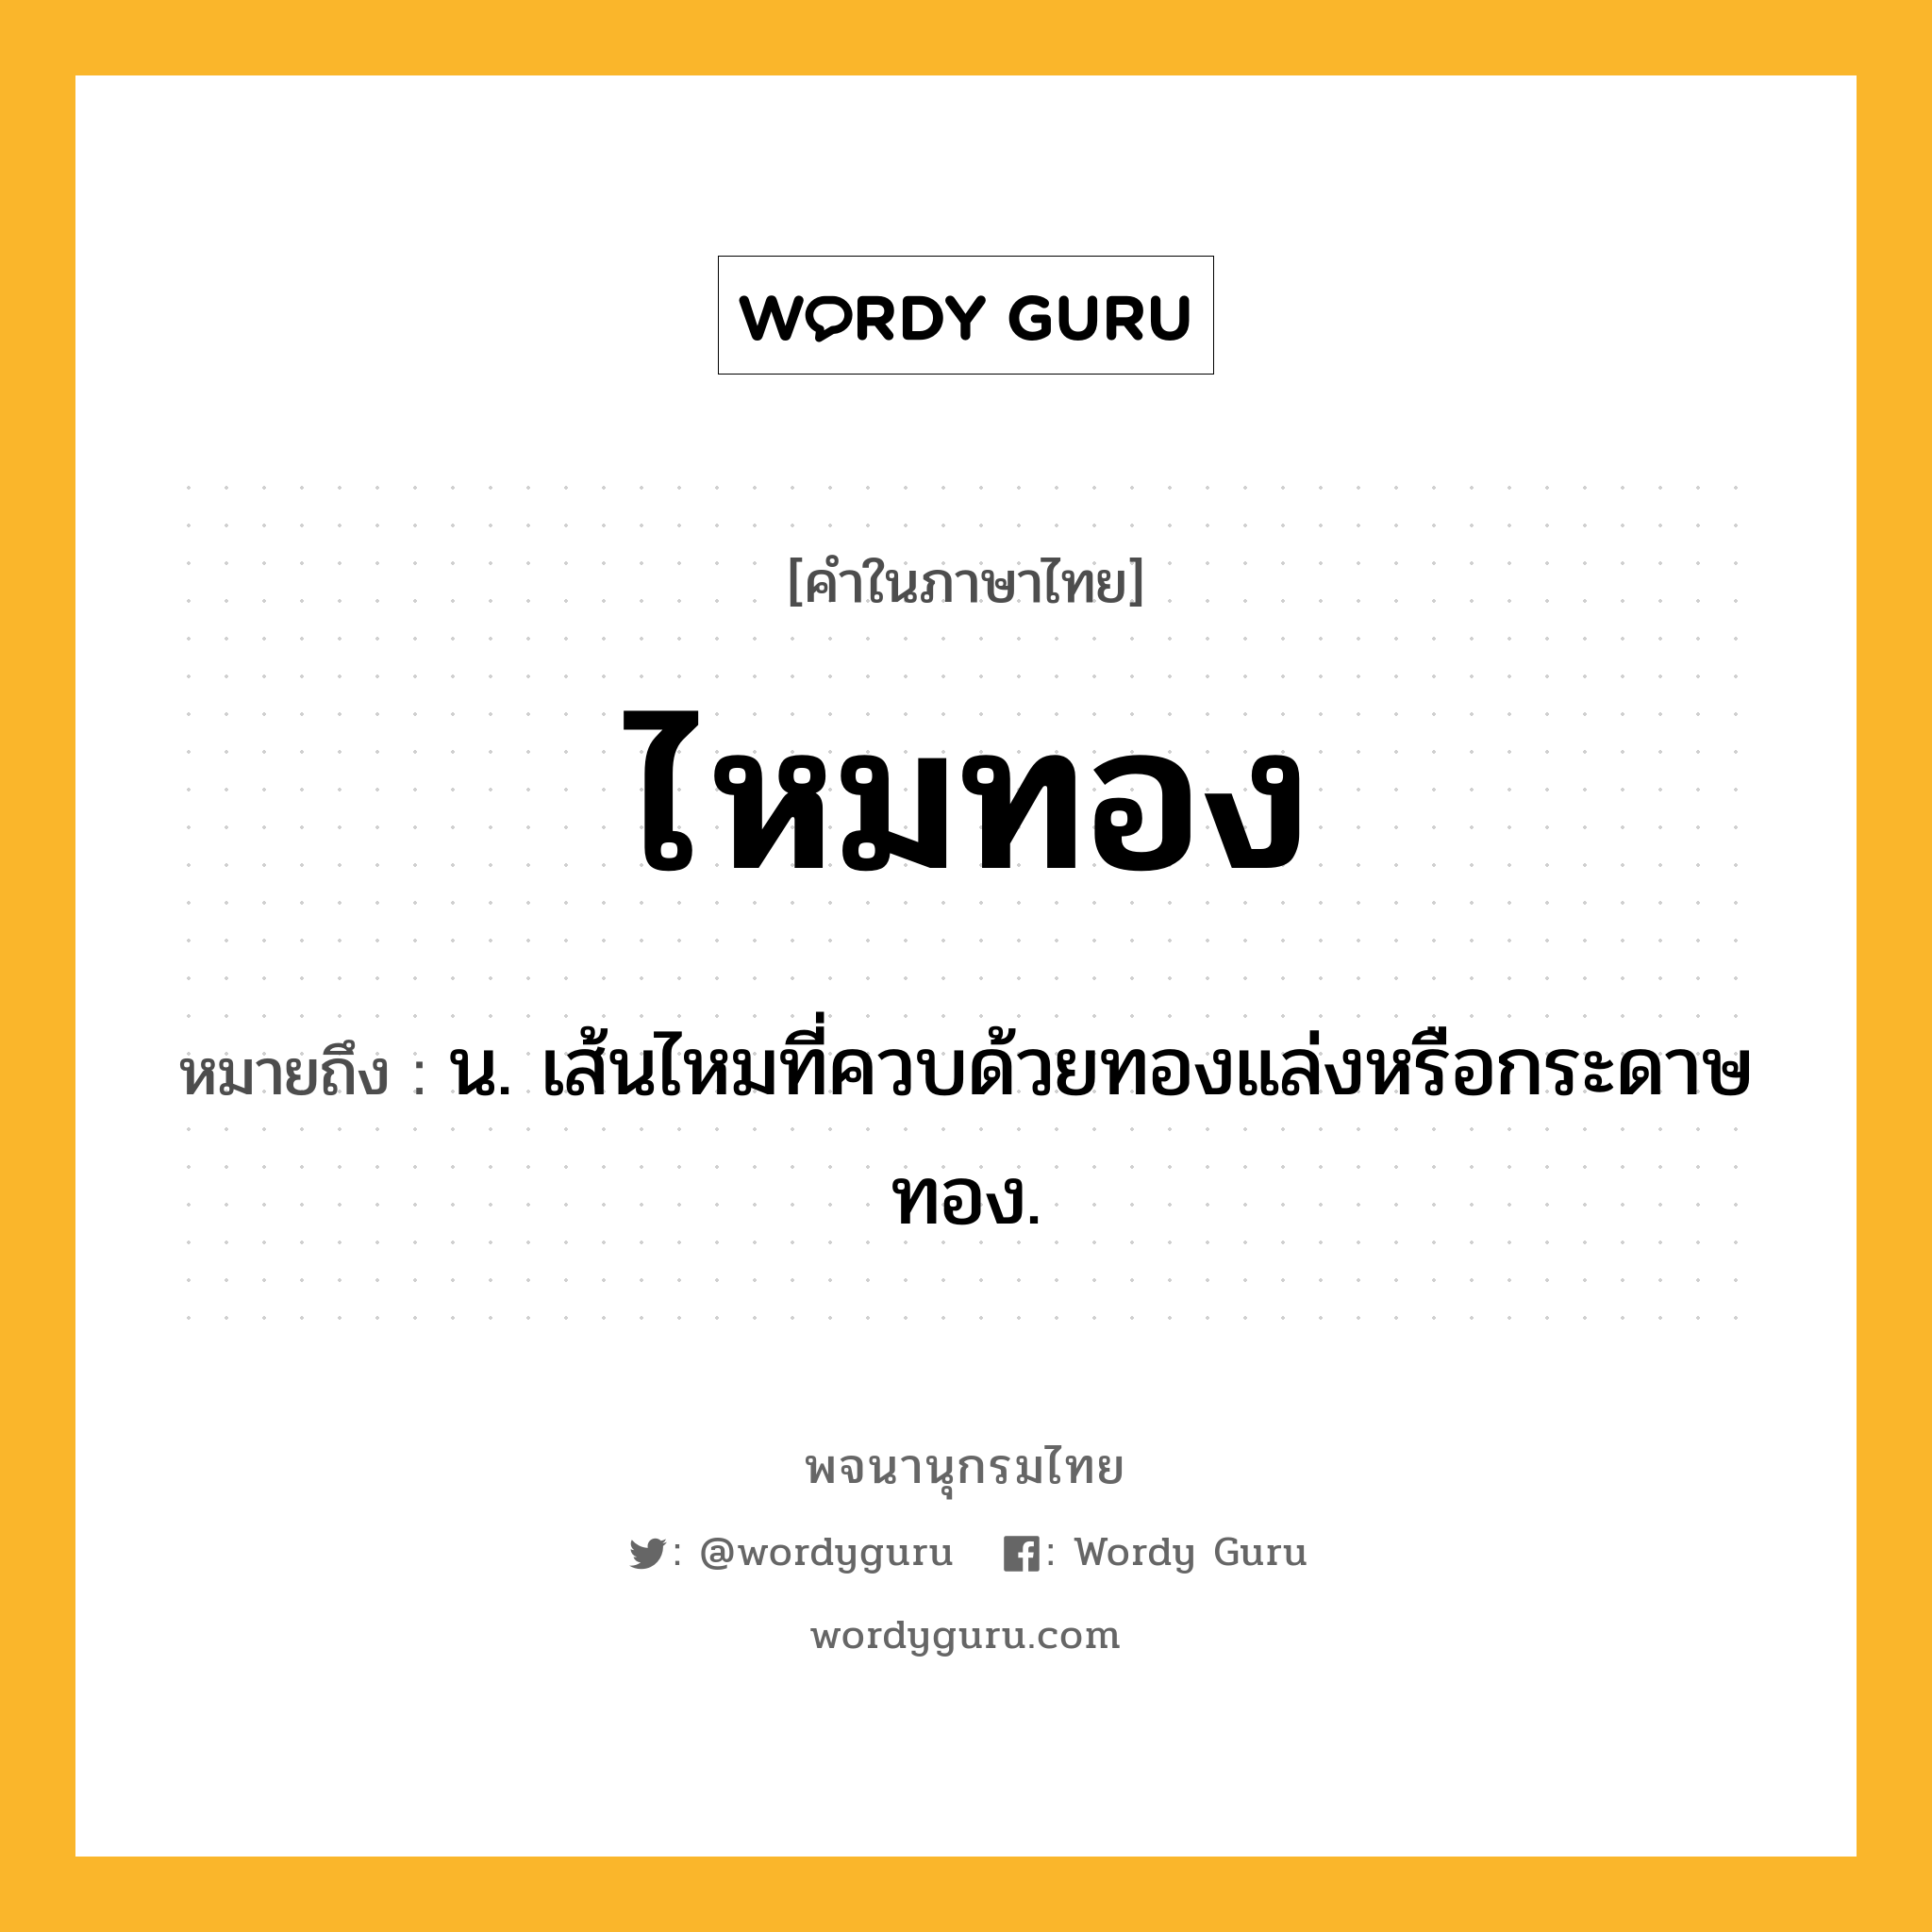 ไหมทอง หมายถึงอะไร?, คำในภาษาไทย ไหมทอง หมายถึง น. เส้นไหมที่ควบด้วยทองแล่งหรือกระดาษทอง.